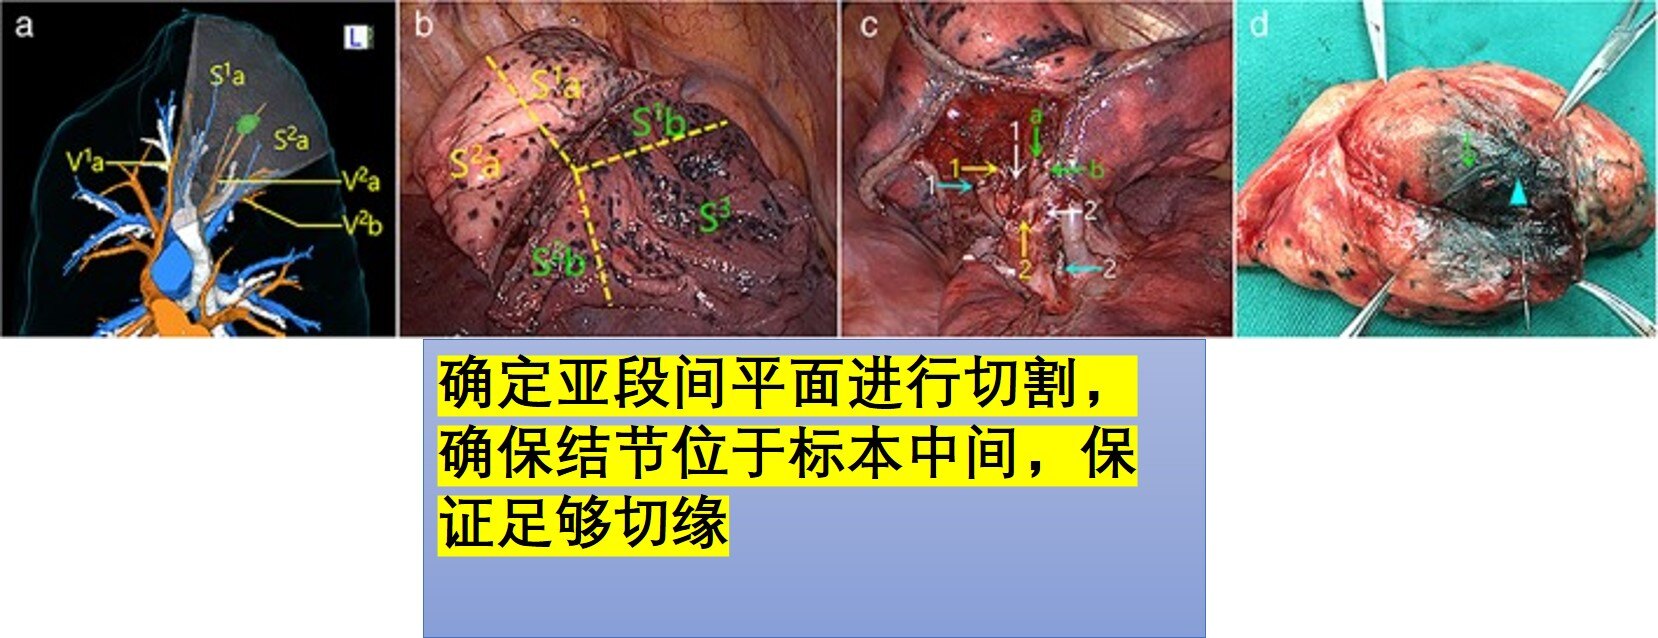 肺结节手术示意图图片